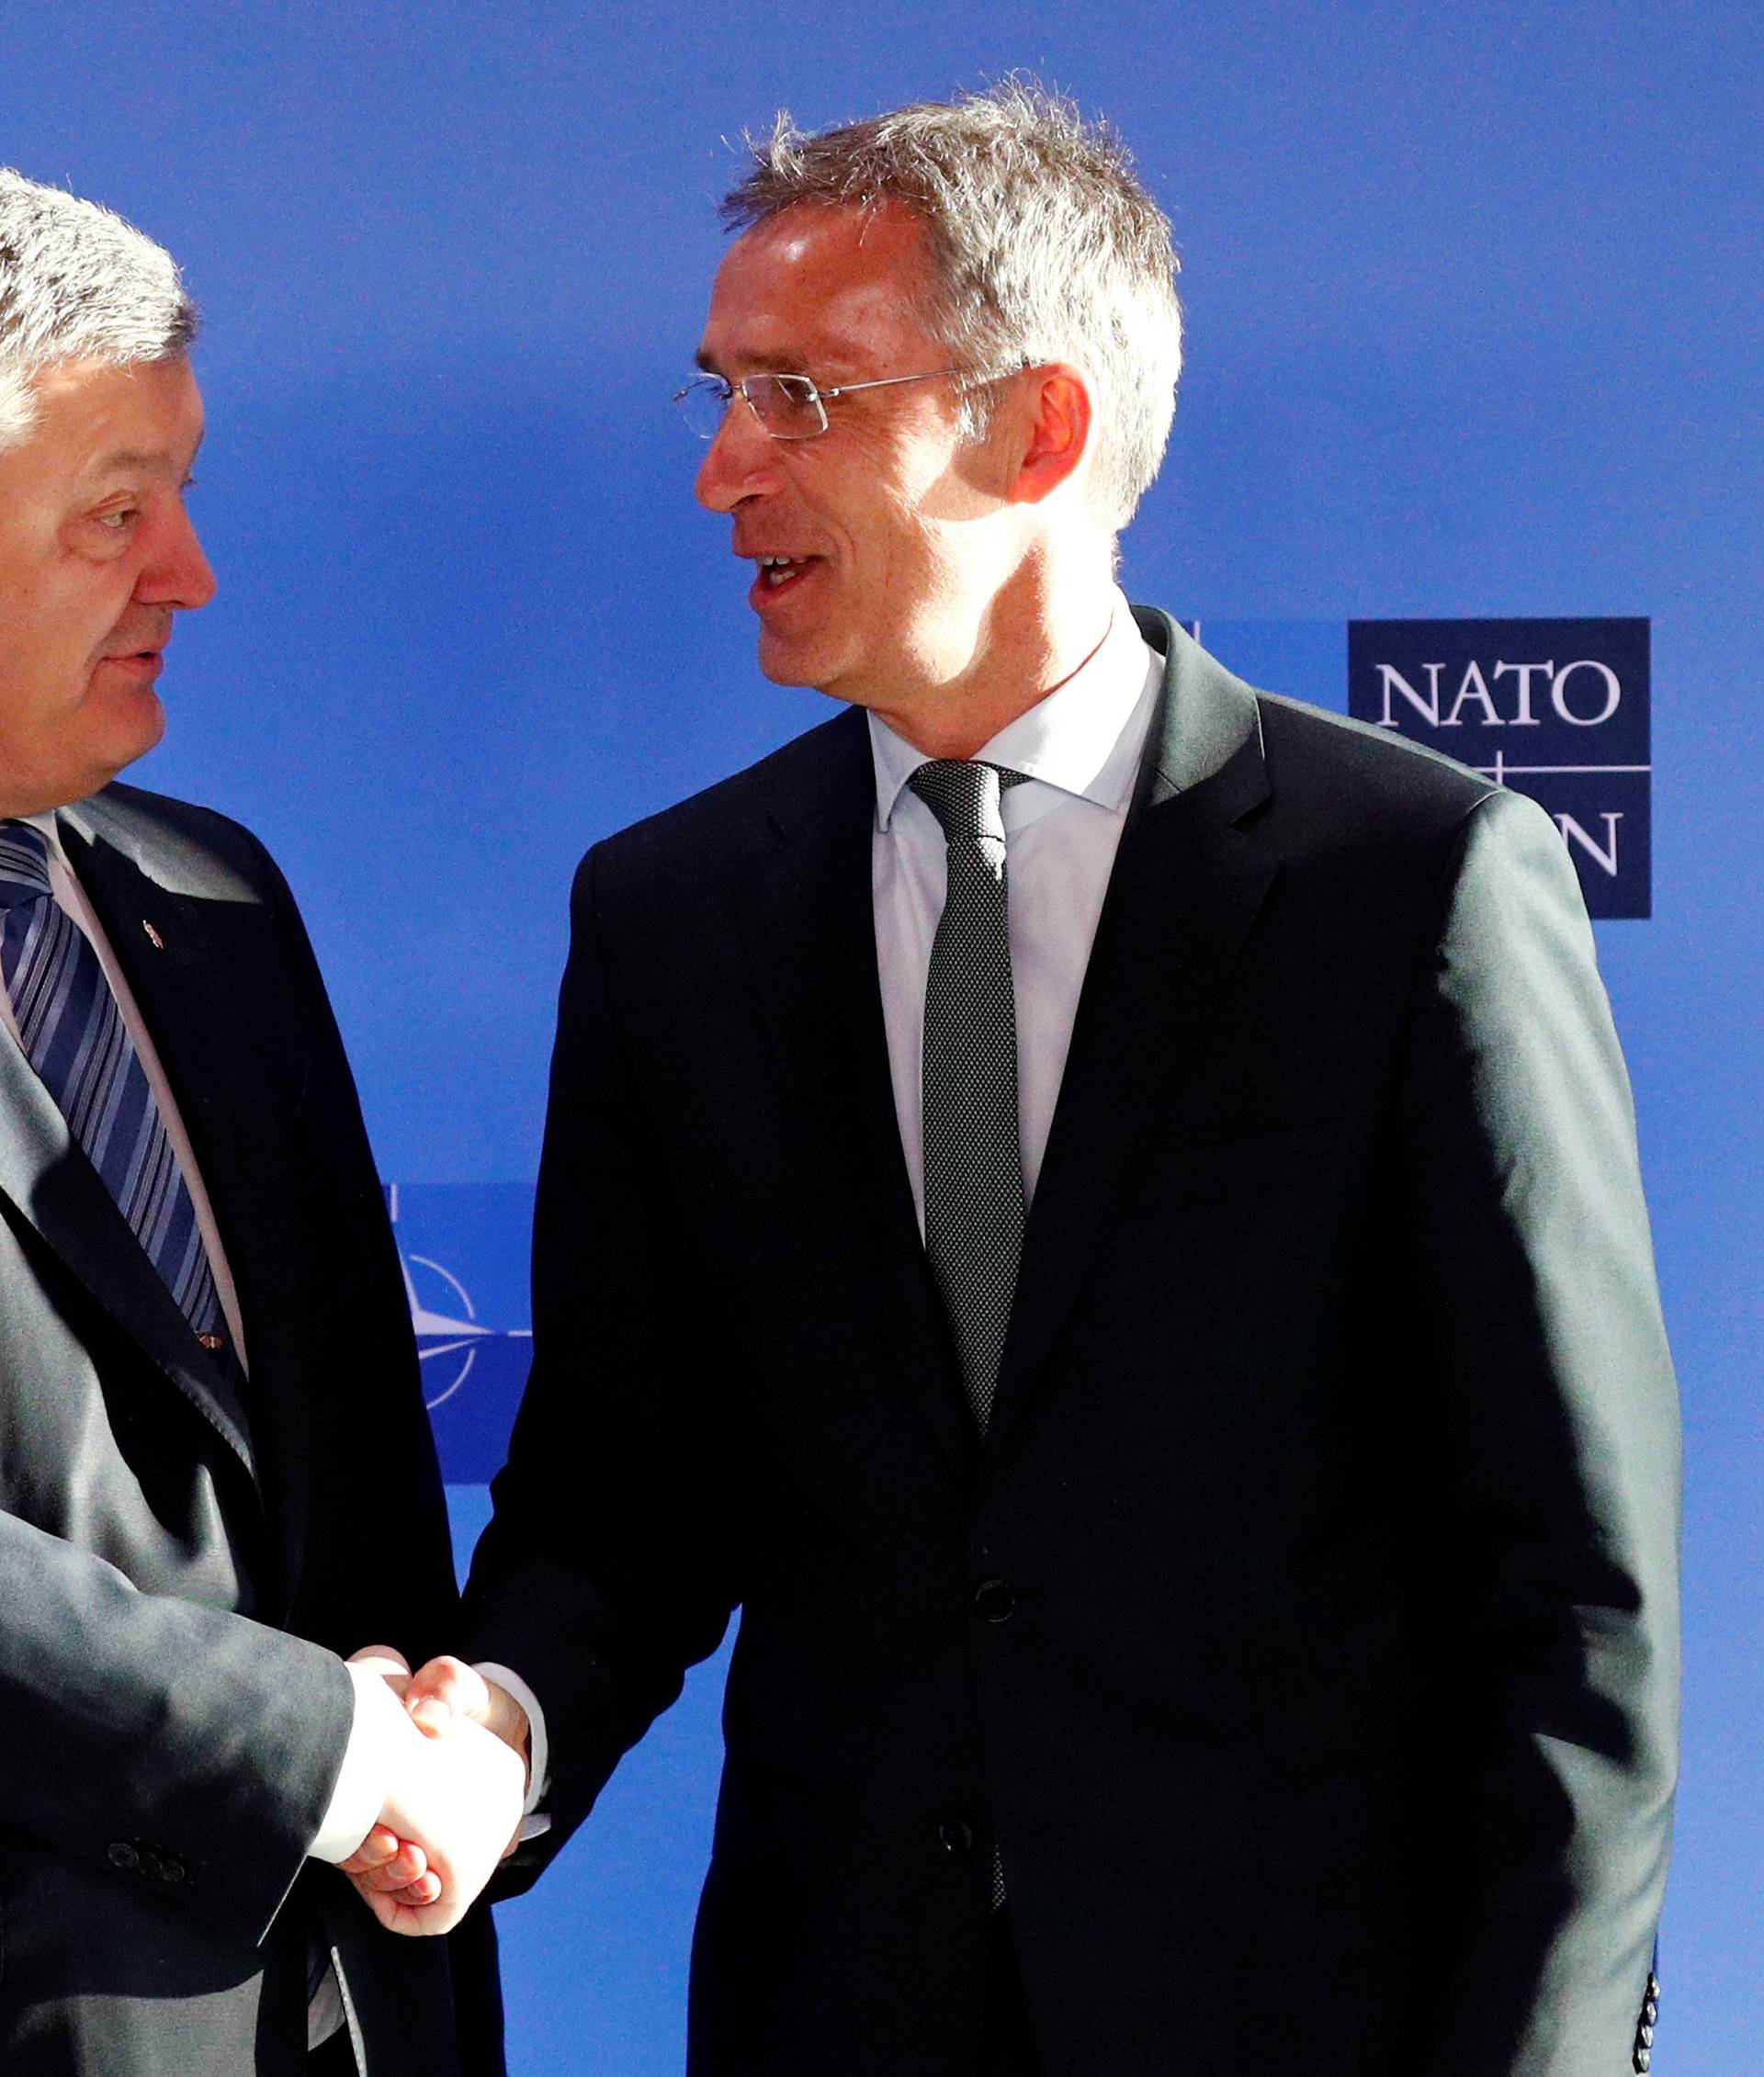 Ukrainian President Poroshenko poses with NATO's Secretary General Stoltenberg in Brussels